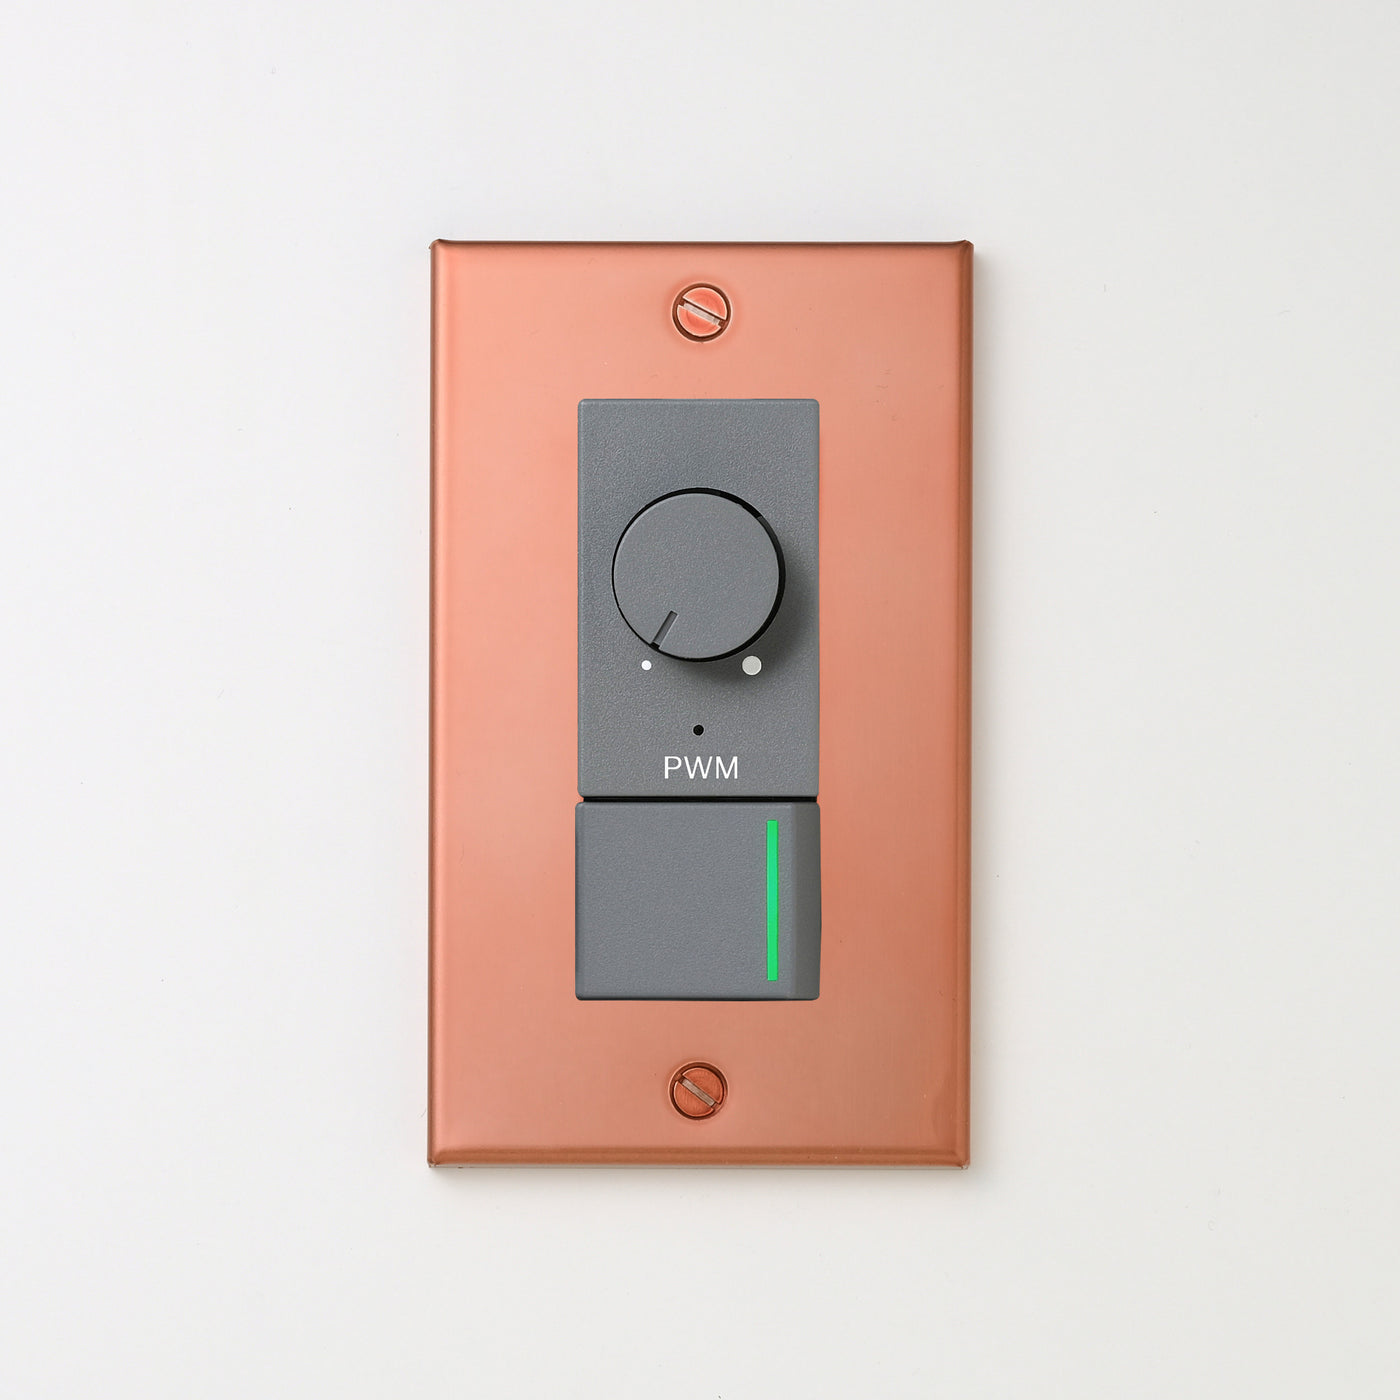 銅色（マット） プレート <br>+ NK PWM制御方式(1ch)ライトコントロール＋片切、3路ガイドランプ（グリーン）スイッチ　 グレー